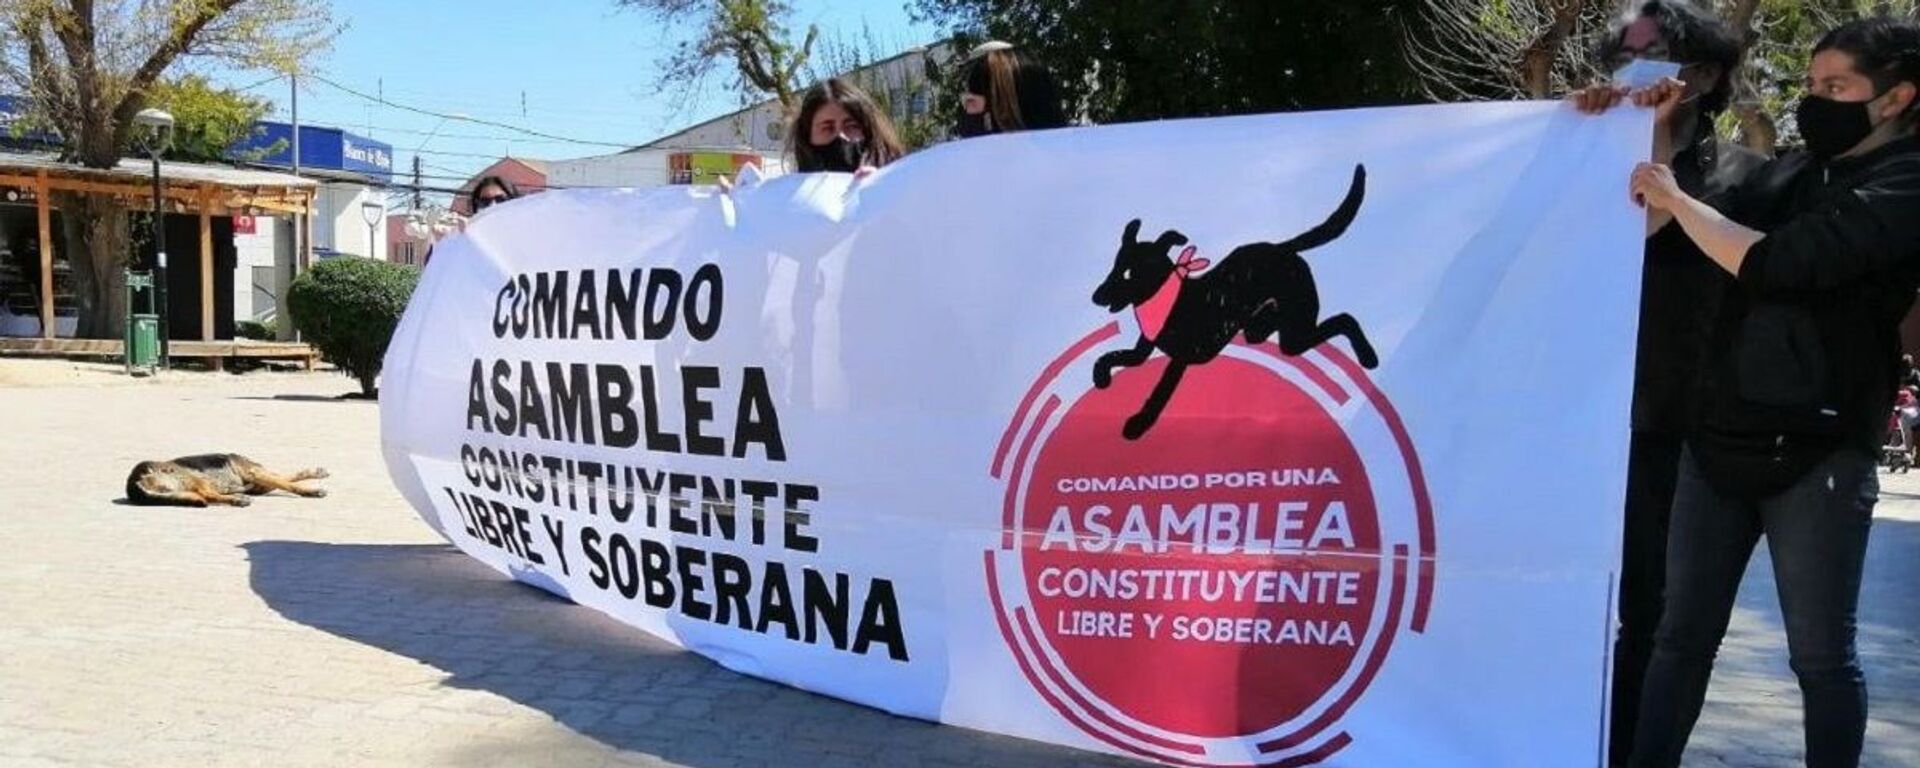 Manifestantes en Chile reclamando una Asamblea Constituyente Libre y Soberana - Sputnik Mundo, 1920, 12.09.2022